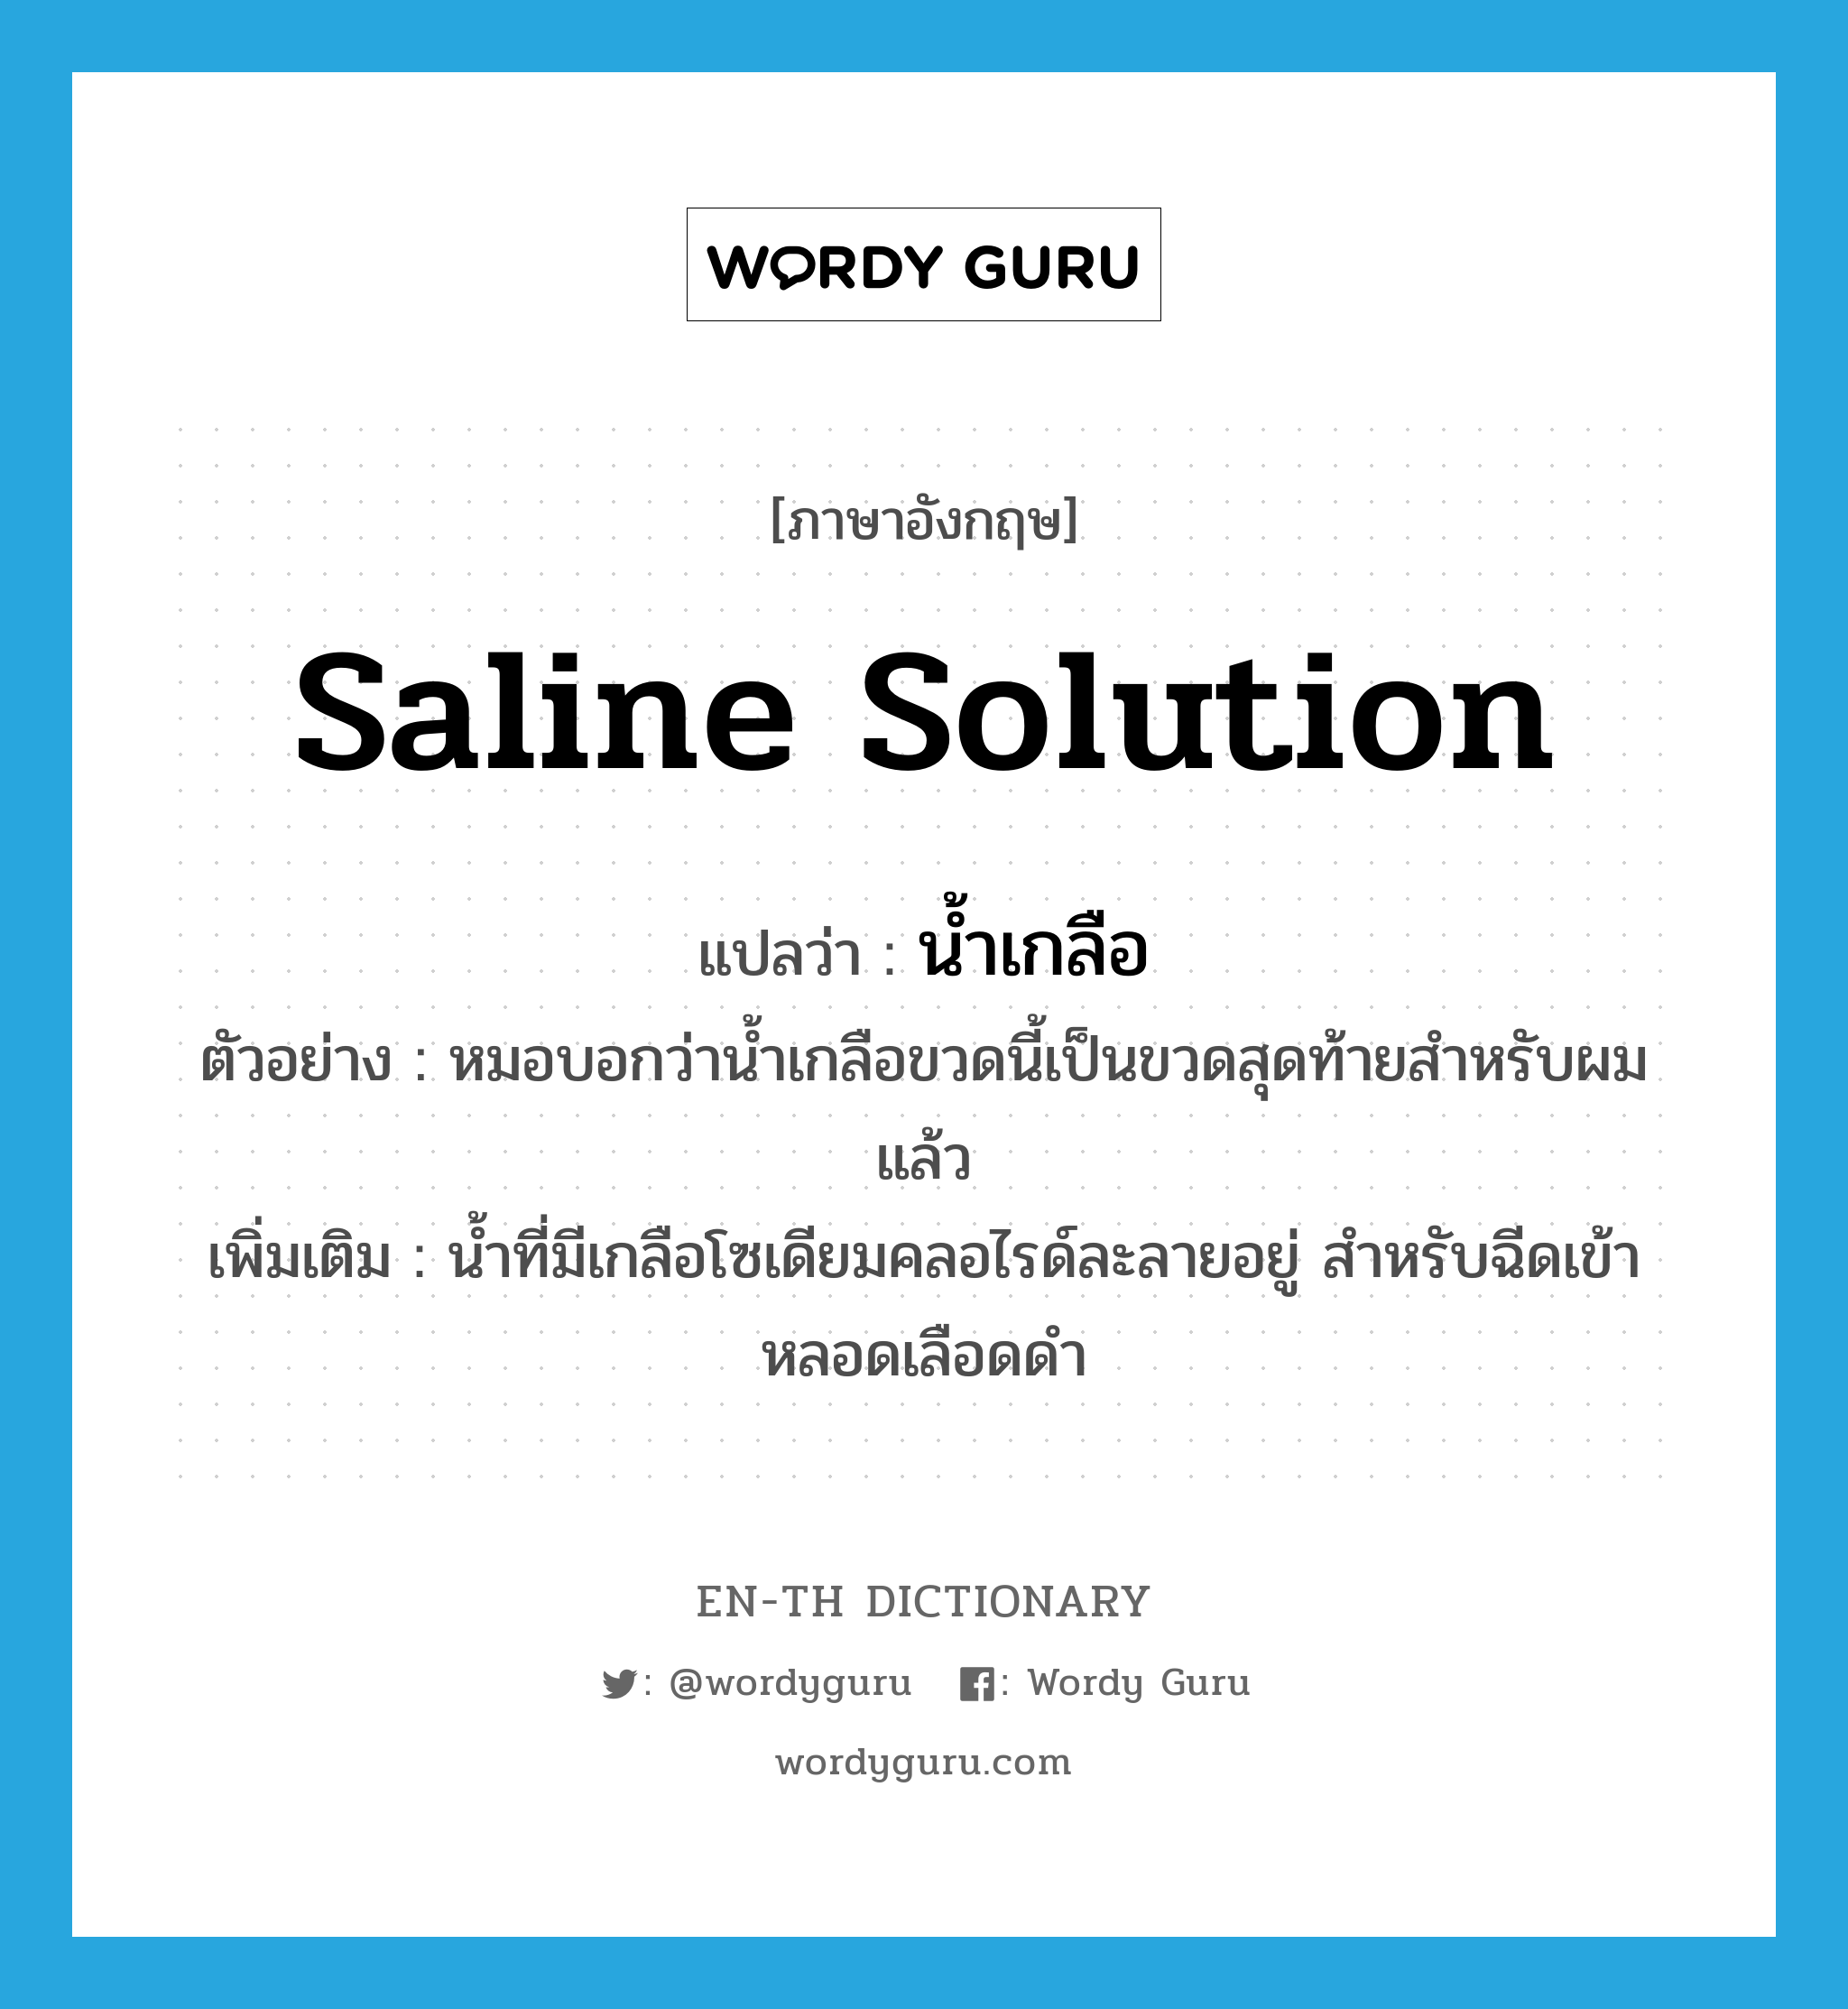 saline solution แปลว่า?, คำศัพท์ภาษาอังกฤษ saline solution แปลว่า น้ำเกลือ ประเภท N ตัวอย่าง หมอบอกว่าน้ำเกลือขวดนี้เป็นขวดสุดท้ายสำหรับผมแล้ว เพิ่มเติม น้ำที่มีเกลือโซเดียมคลอไรด์ละลายอยู่ สำหรับฉีดเข้าหลอดเลือดดำ หมวด N